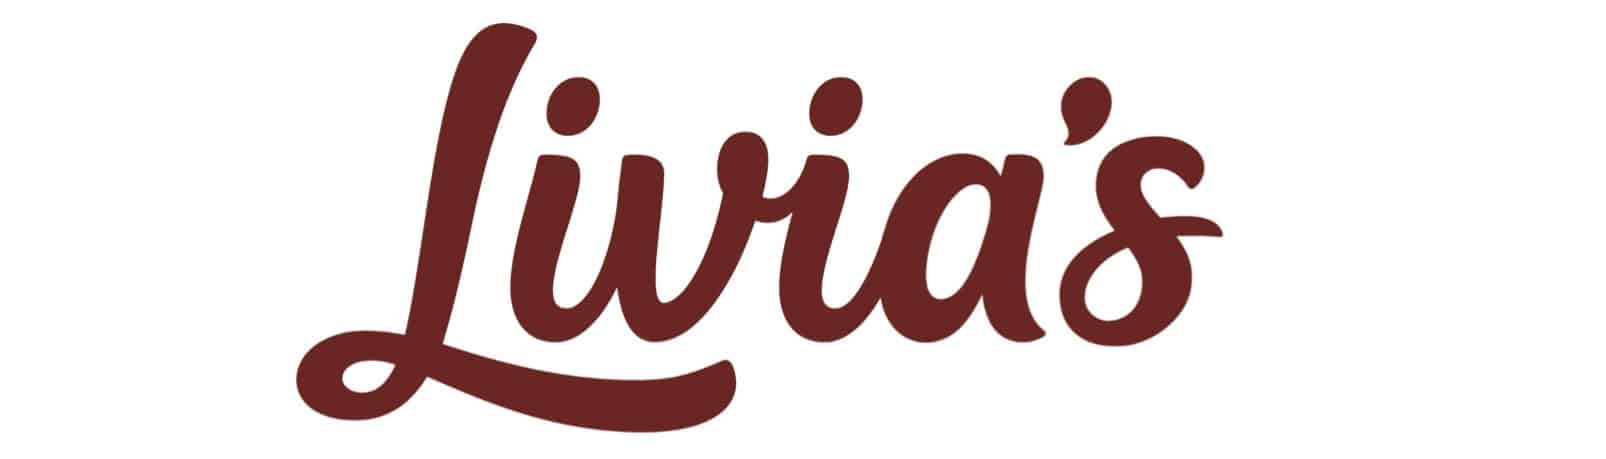 Livias logo